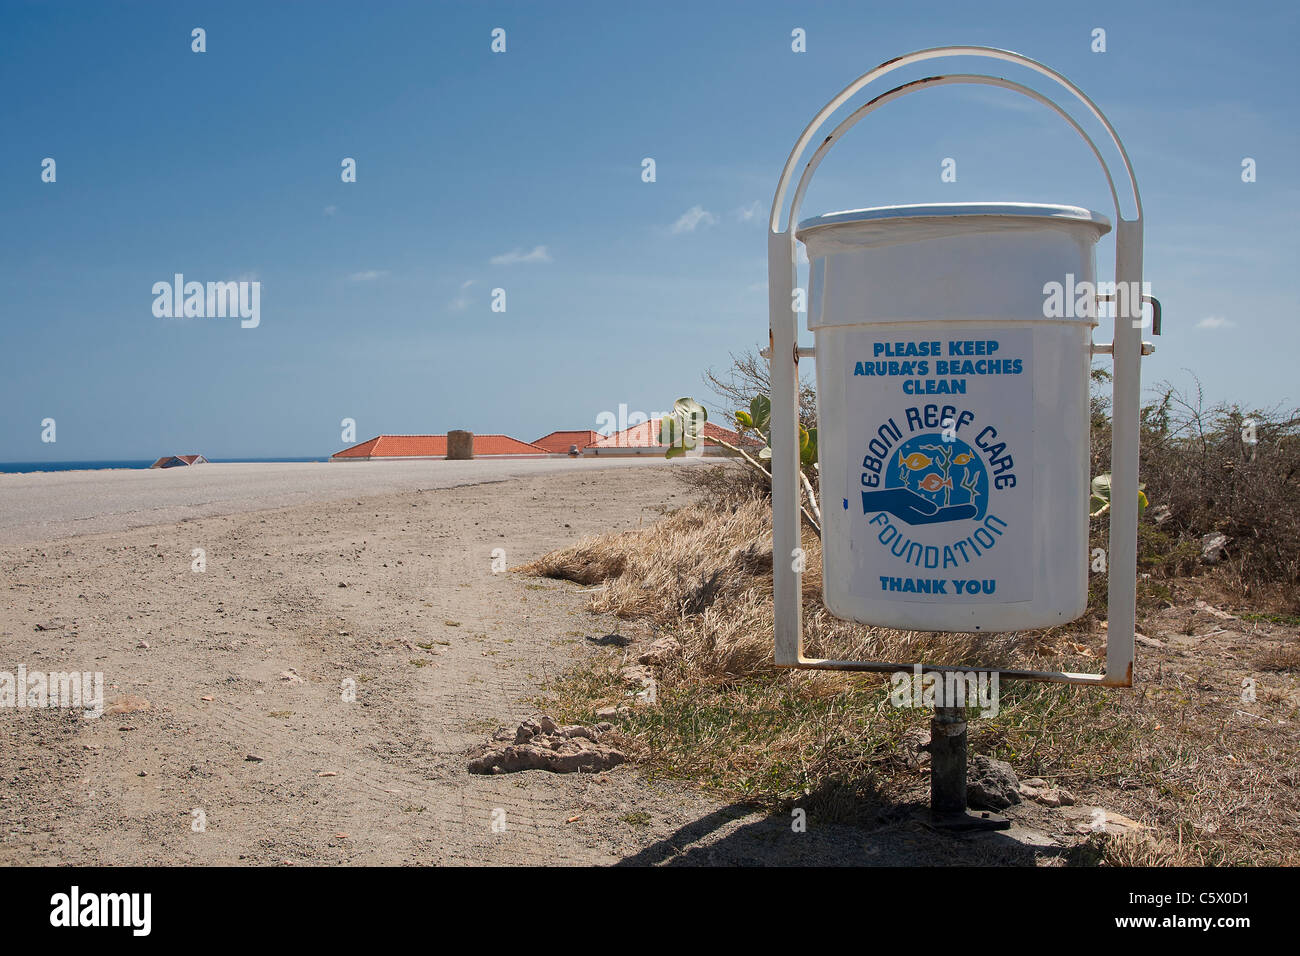 Eboni reef care foundation annuncio su lettiera bin dal Faro California sulla spiaggia arashi, Aruba, Antille olandesi Foto Stock